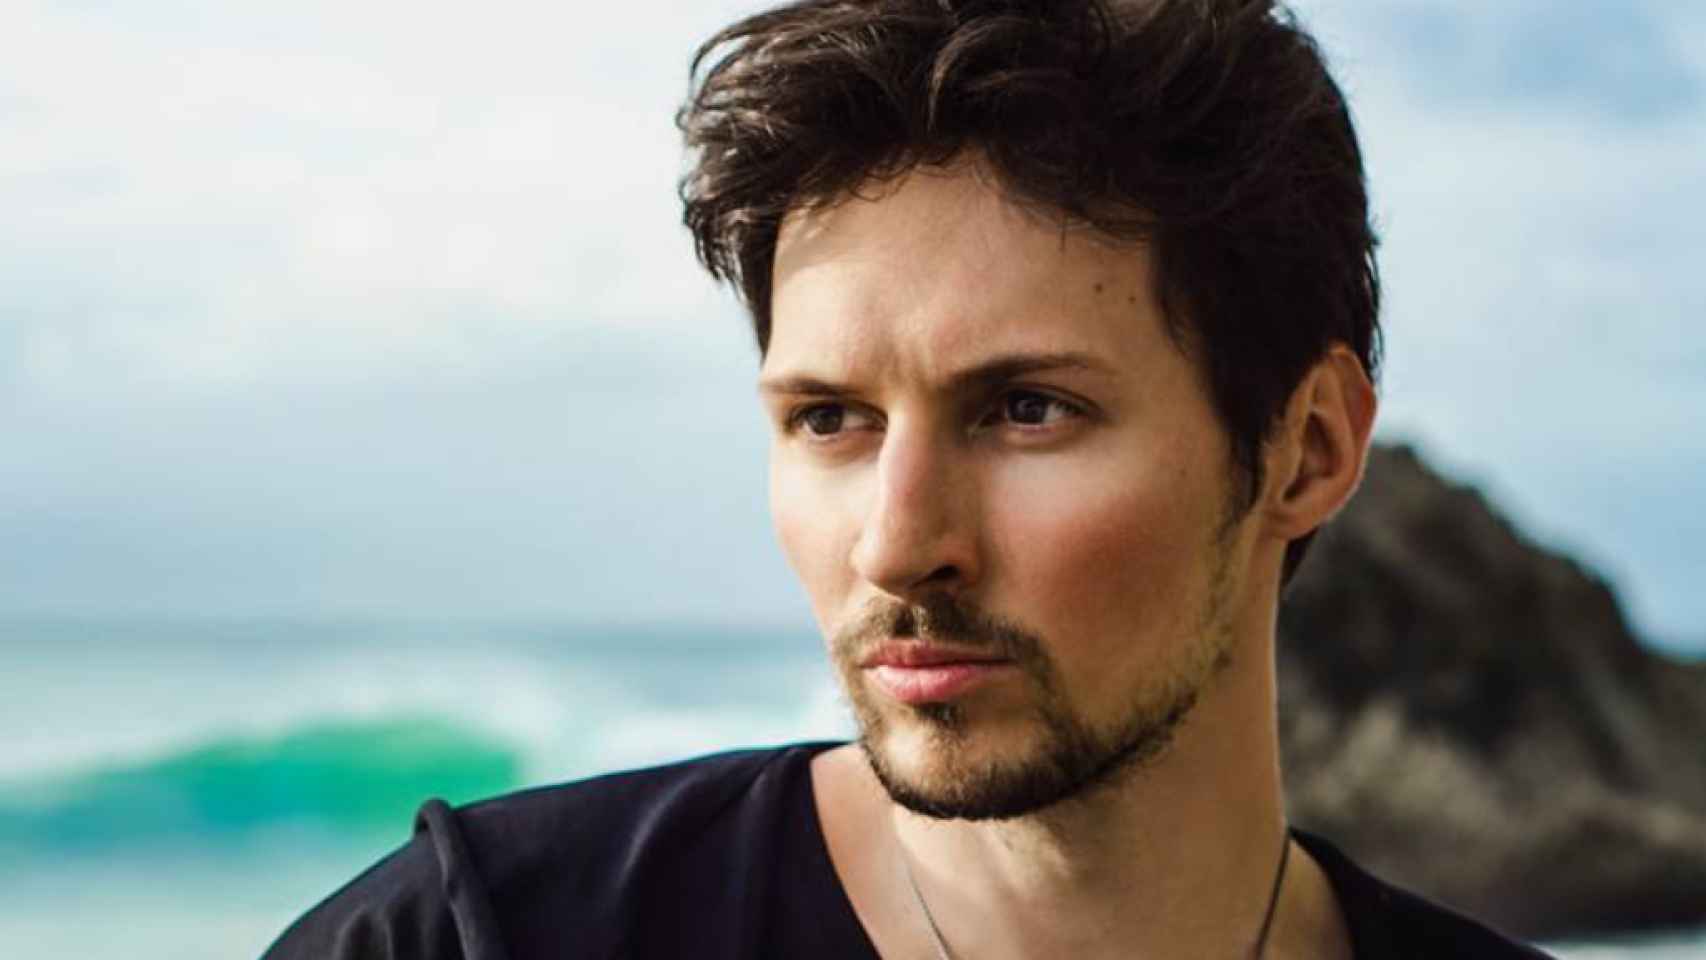 Pavel Durov en una imagen compartida en Instagram.